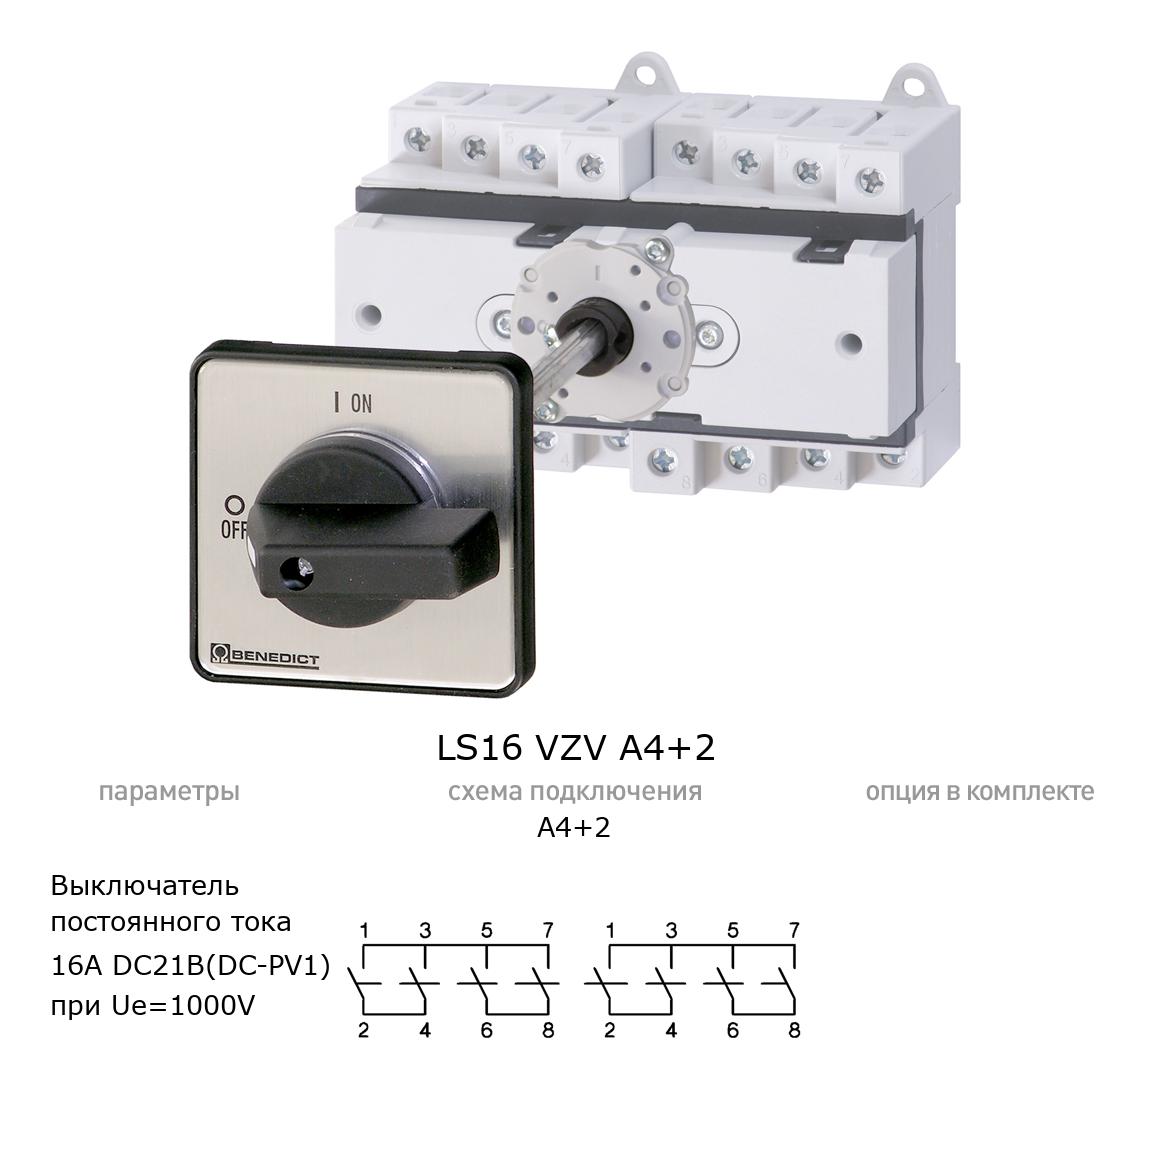 Кулачковый переключатель для постоянного тока (DC) LS16 VZV A4+2 BENEDICT